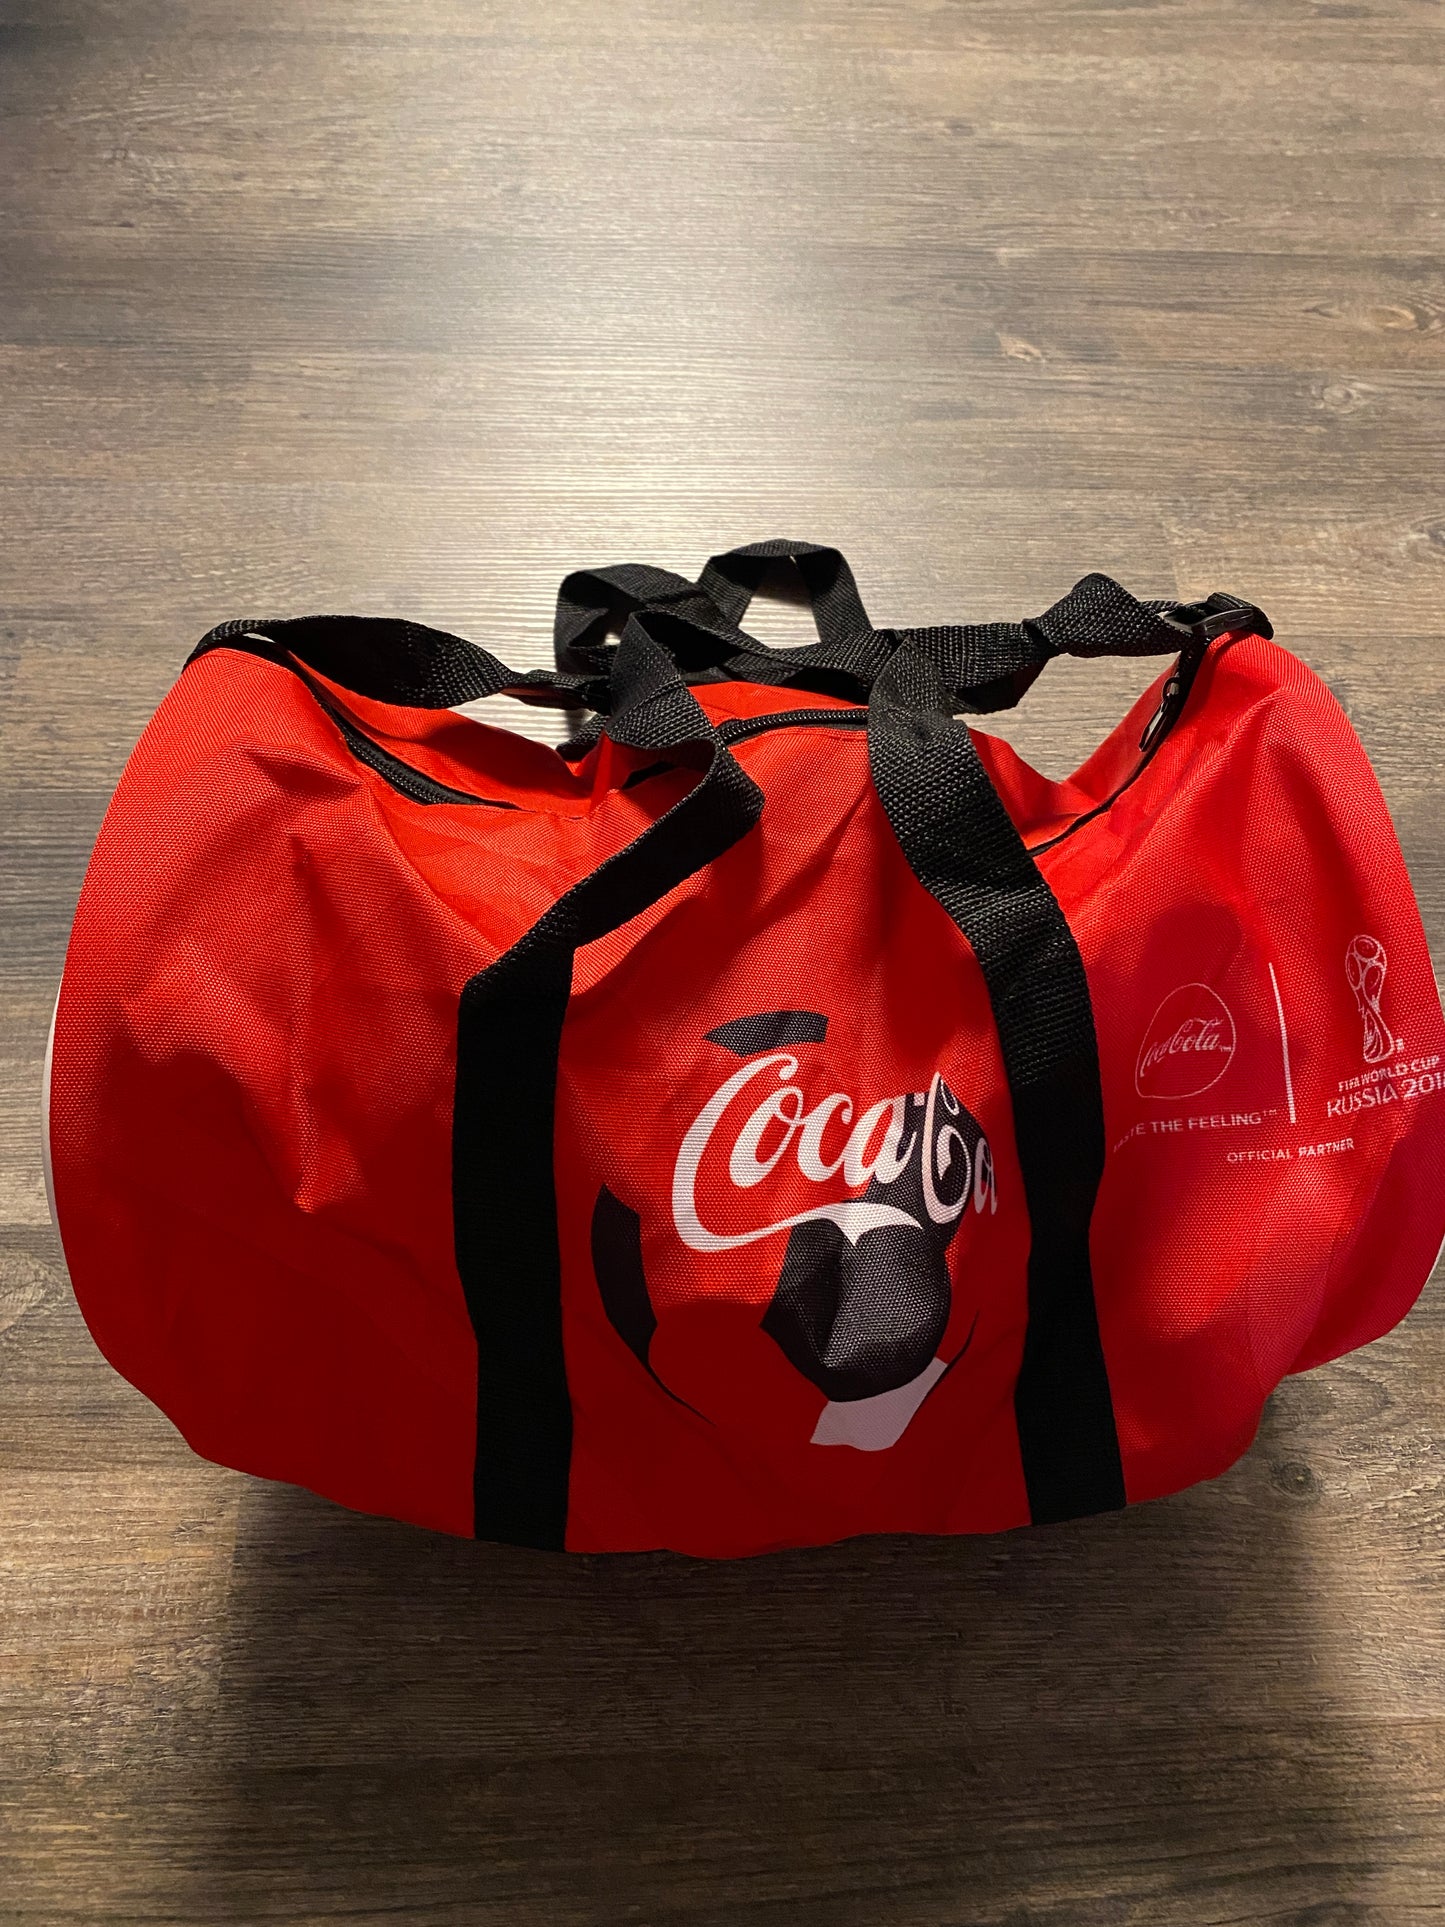 Tasche Coca Cola